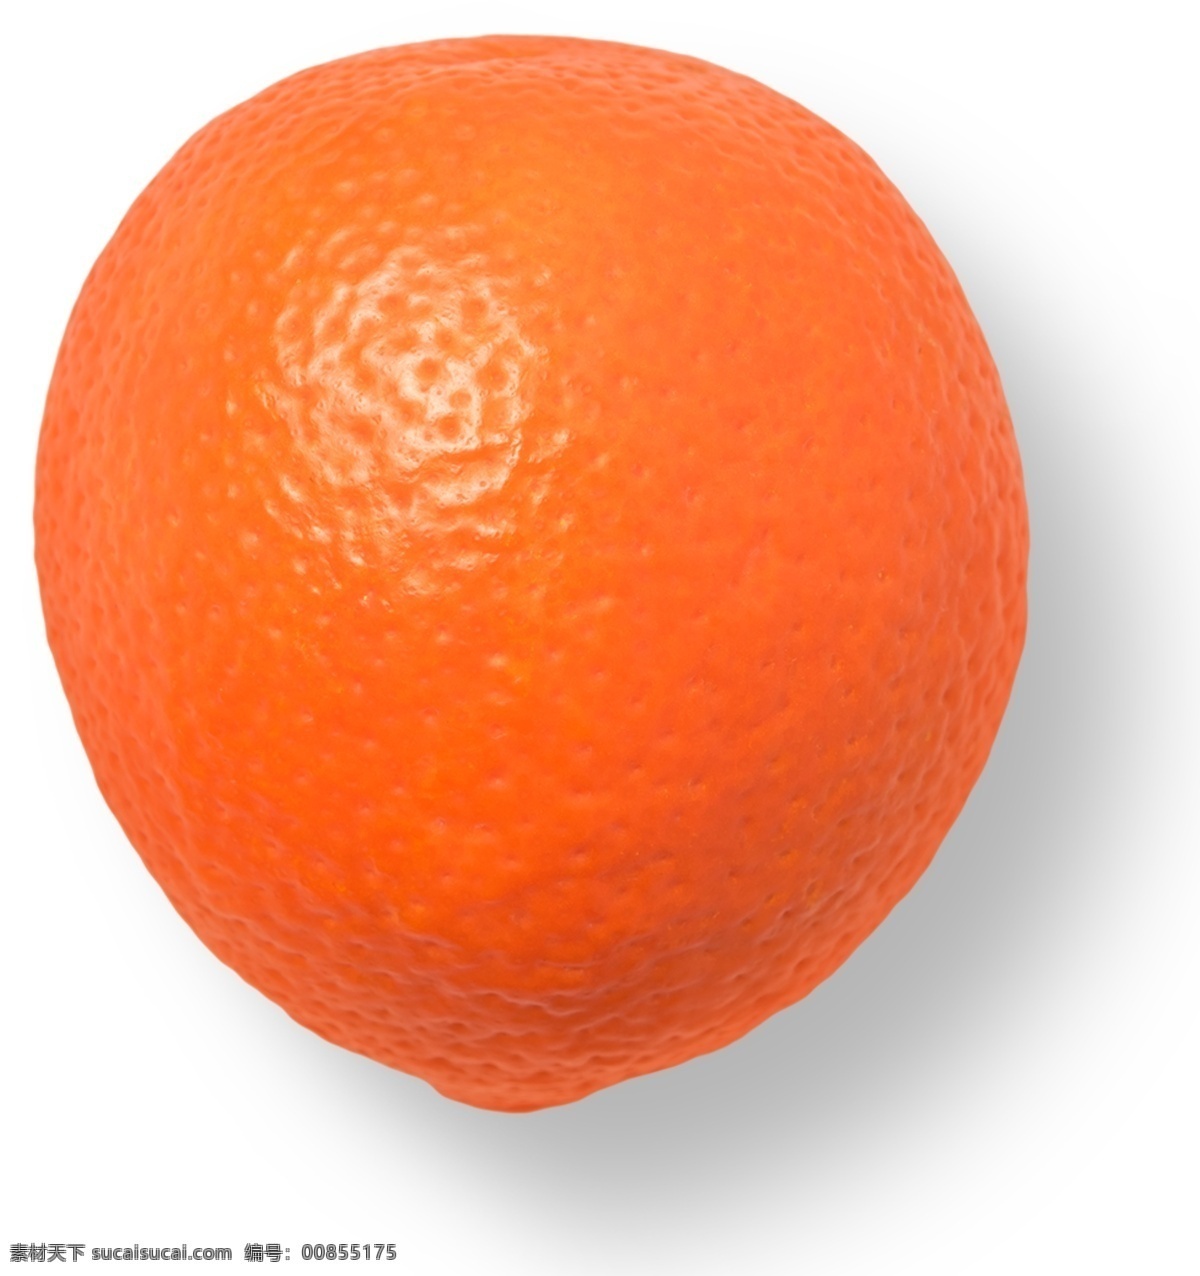 橙子图片 png图片 png免抠 素材免抠 免抠素材 免抠元素 免抠 ps免抠 抠图 png素材 水果 橘子 橙子 桔子 丑橘 丑桔 柠檬 青柠 超市 生鲜 百货